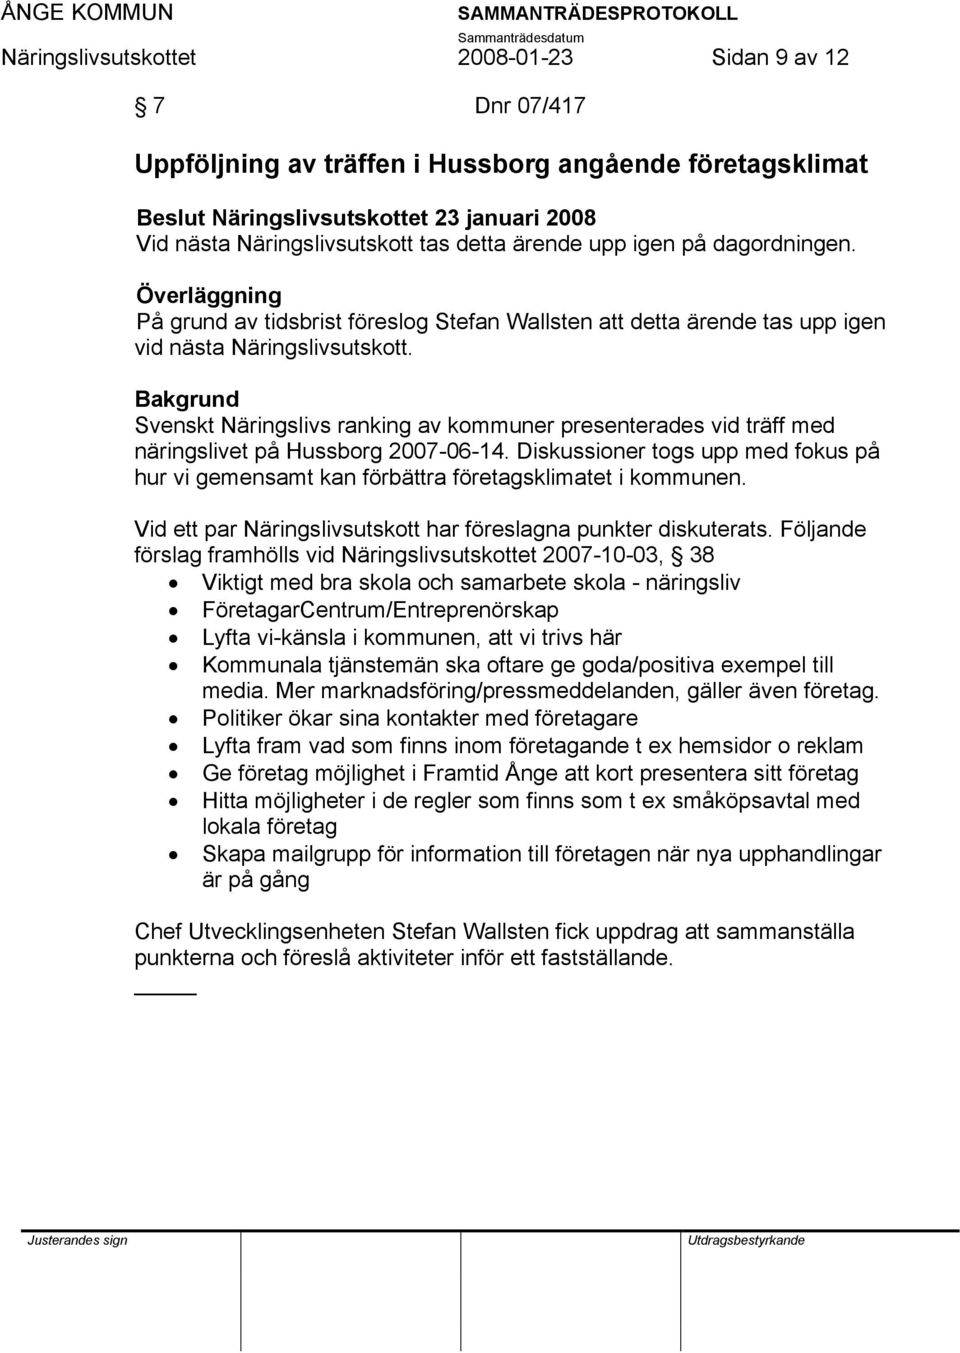 Svenskt Näringslivs ranking av kommuner presenterades vid träff med näringslivet på Hussborg 2007-06-14. Diskussioner togs upp med fokus på hur vi gemensamt kan förbättra företagsklimatet i kommunen.